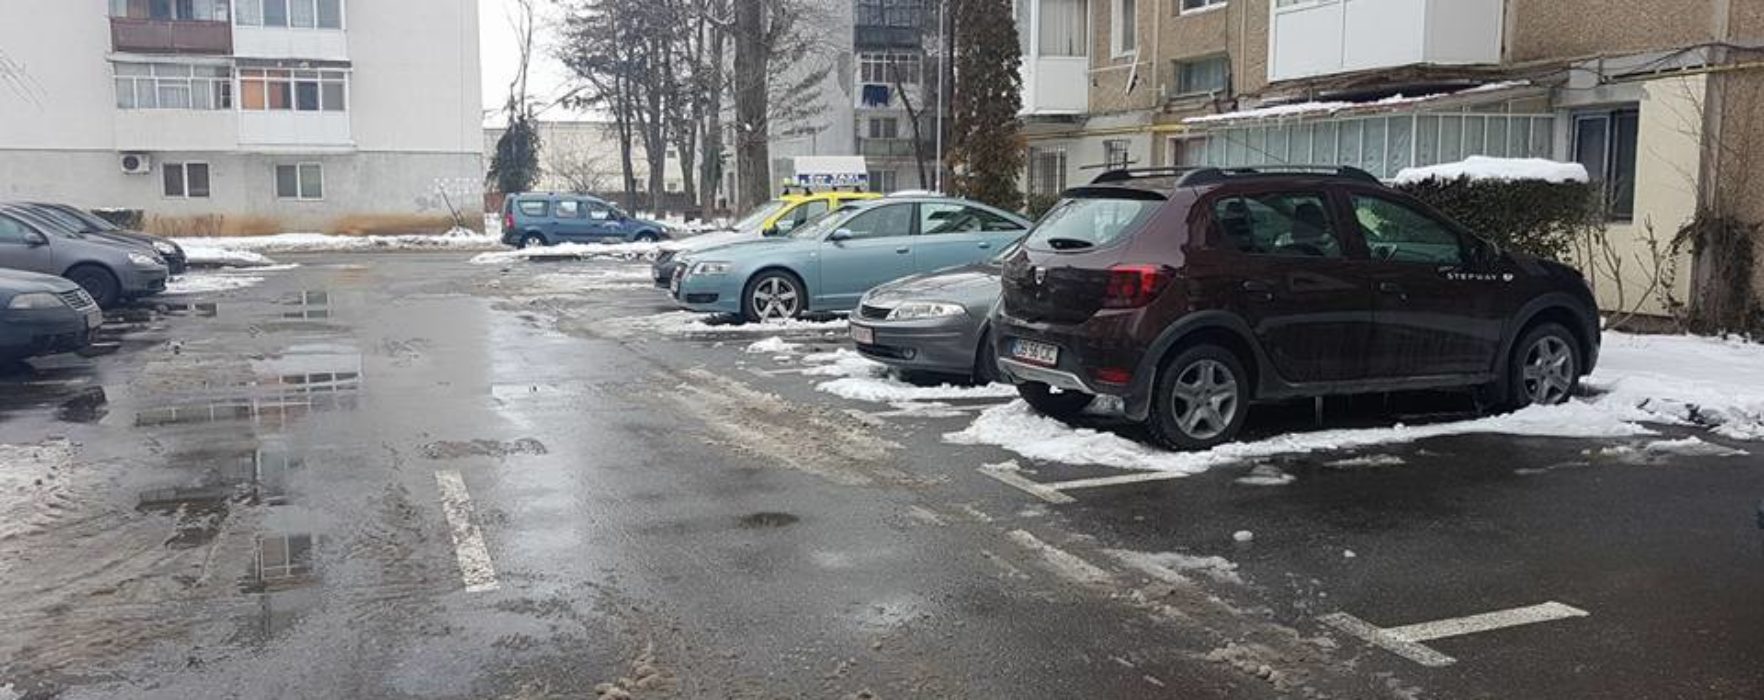 Târgovişte: Autorităţile acţionează pentru deszăpezirea străzilor din municipiu